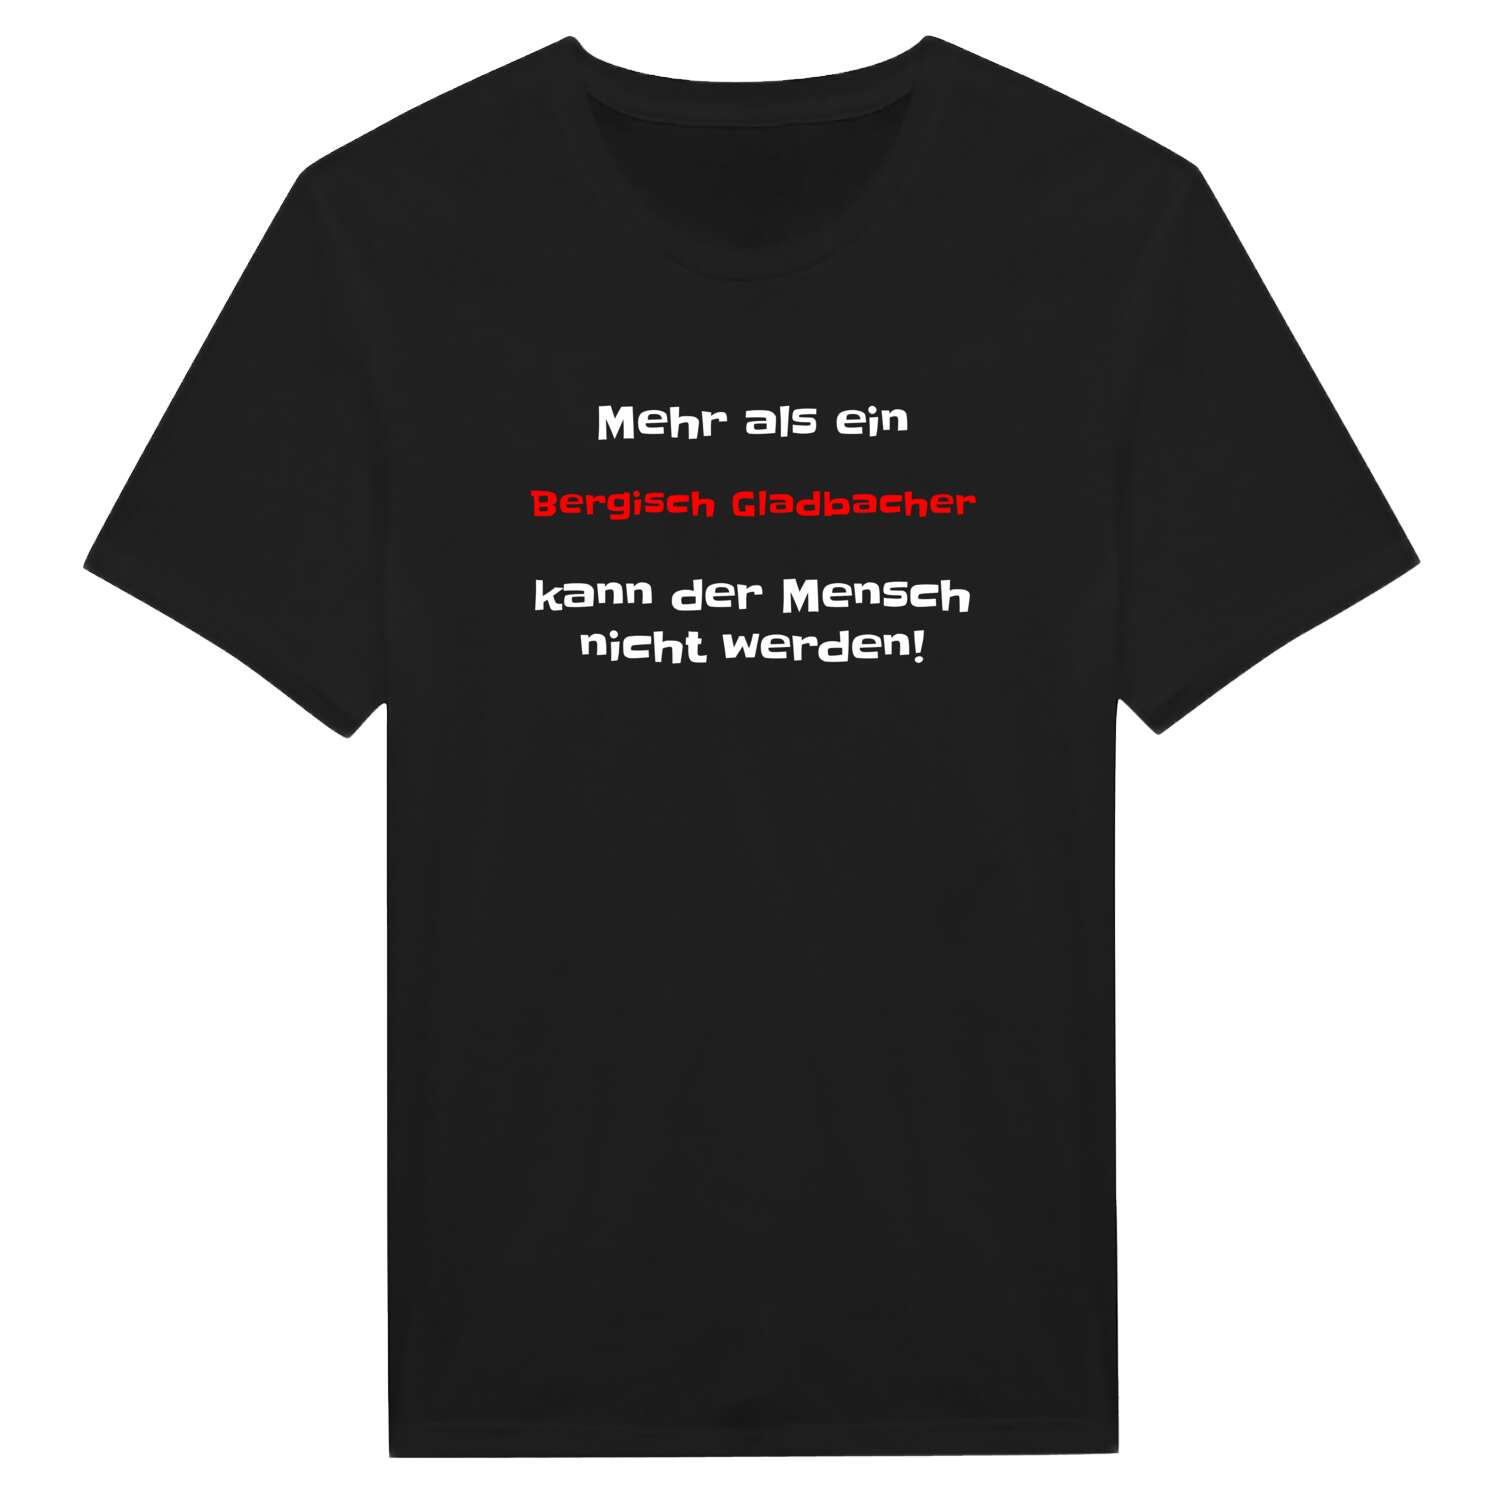 Bergisch Gladbach T-Shirt »Mehr als ein«